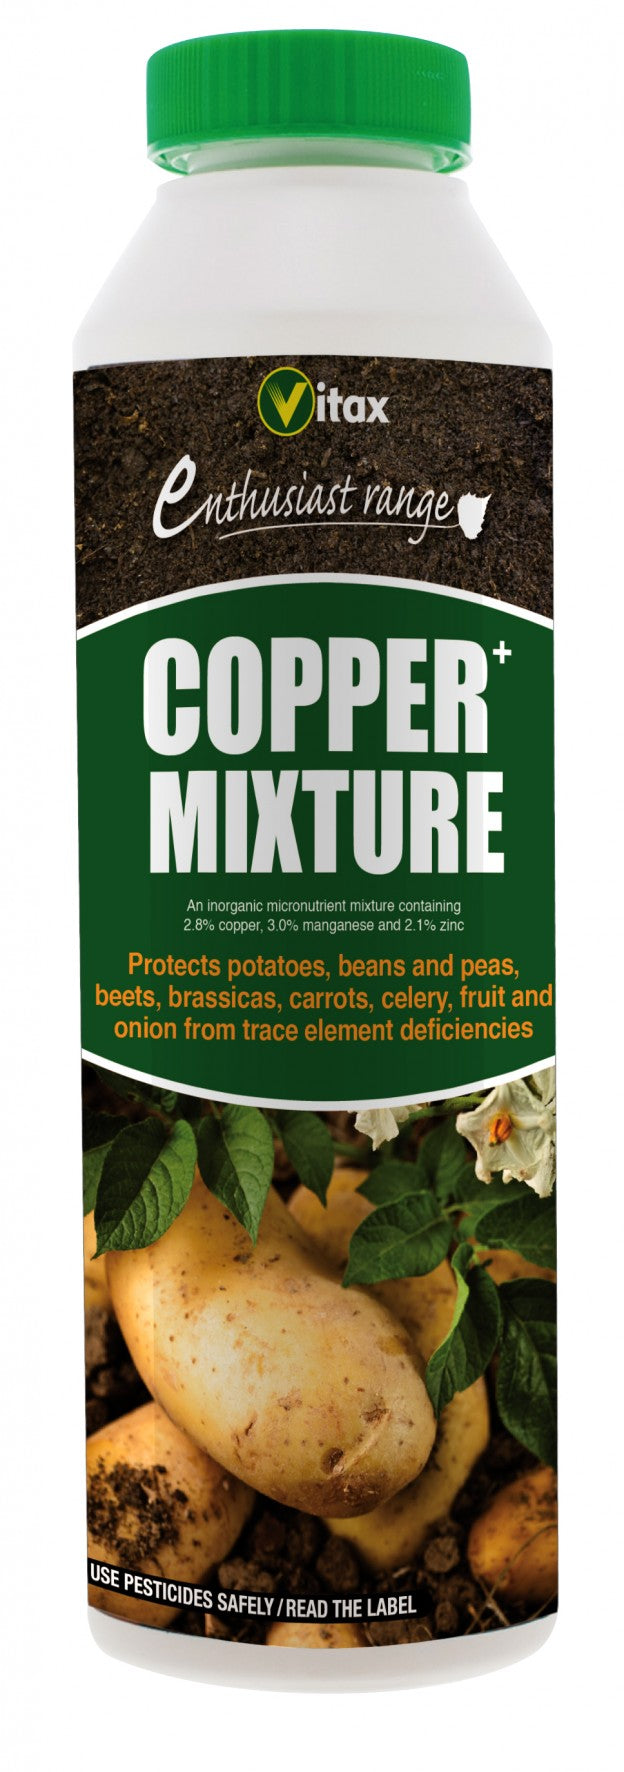 Copper mixture